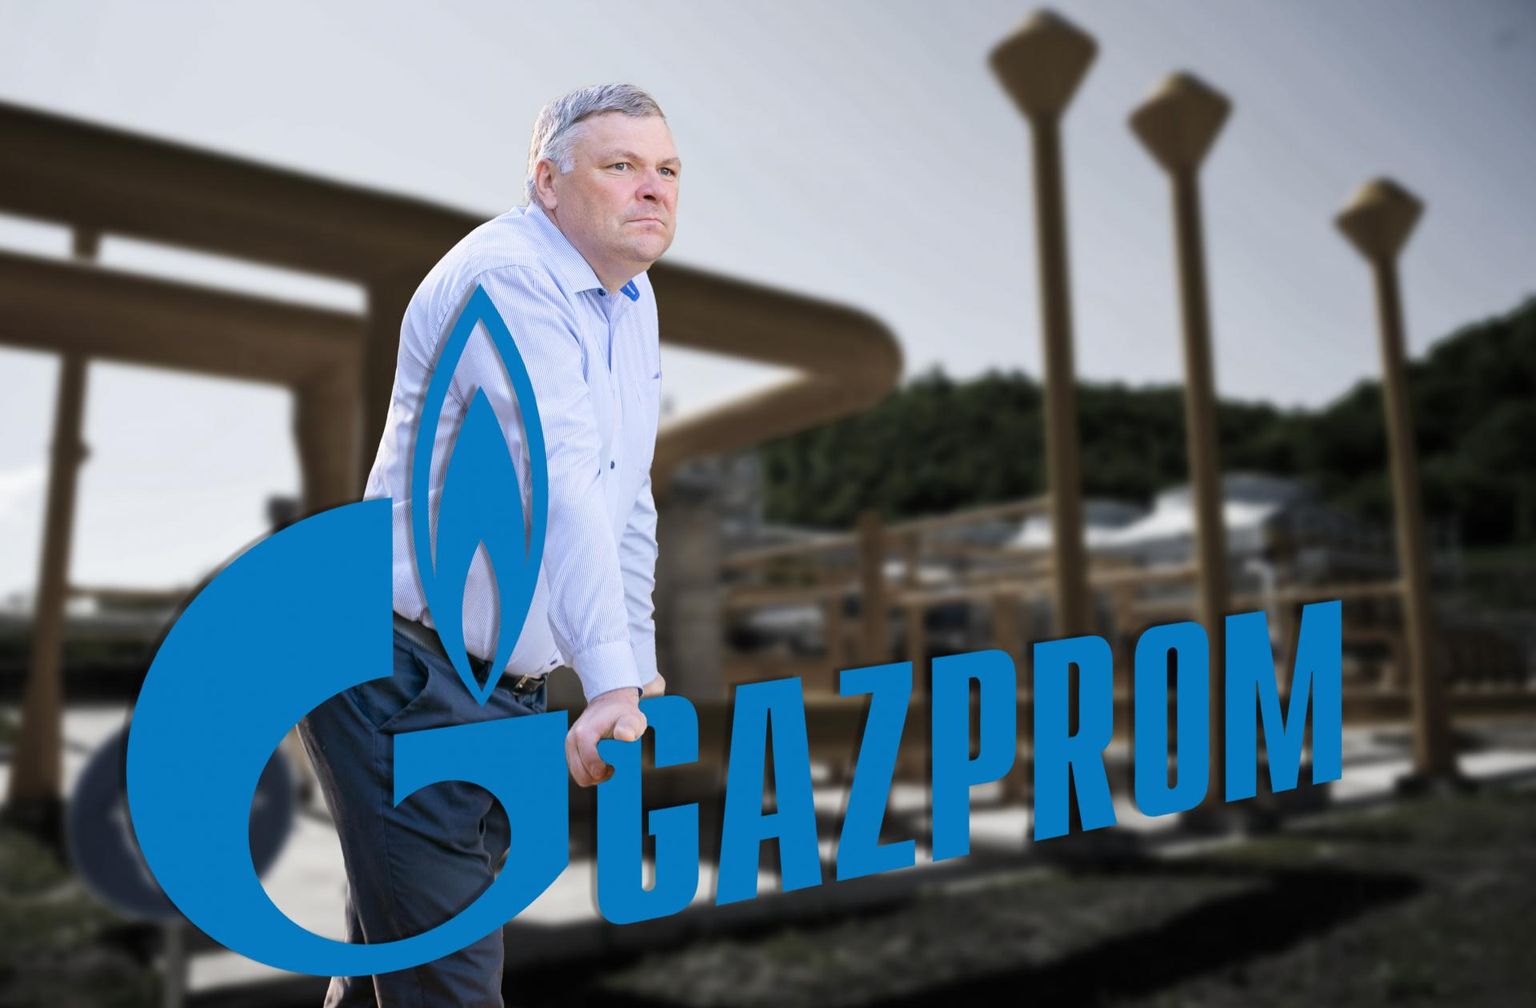 Entinen ympäristöministeri Marko Pomerants (– Sanon, että Tallinna toimii tällä hetkellä holtittomasti) of the Powerhouse PR firm is lobbying for Russia’s Gazprom Neft.